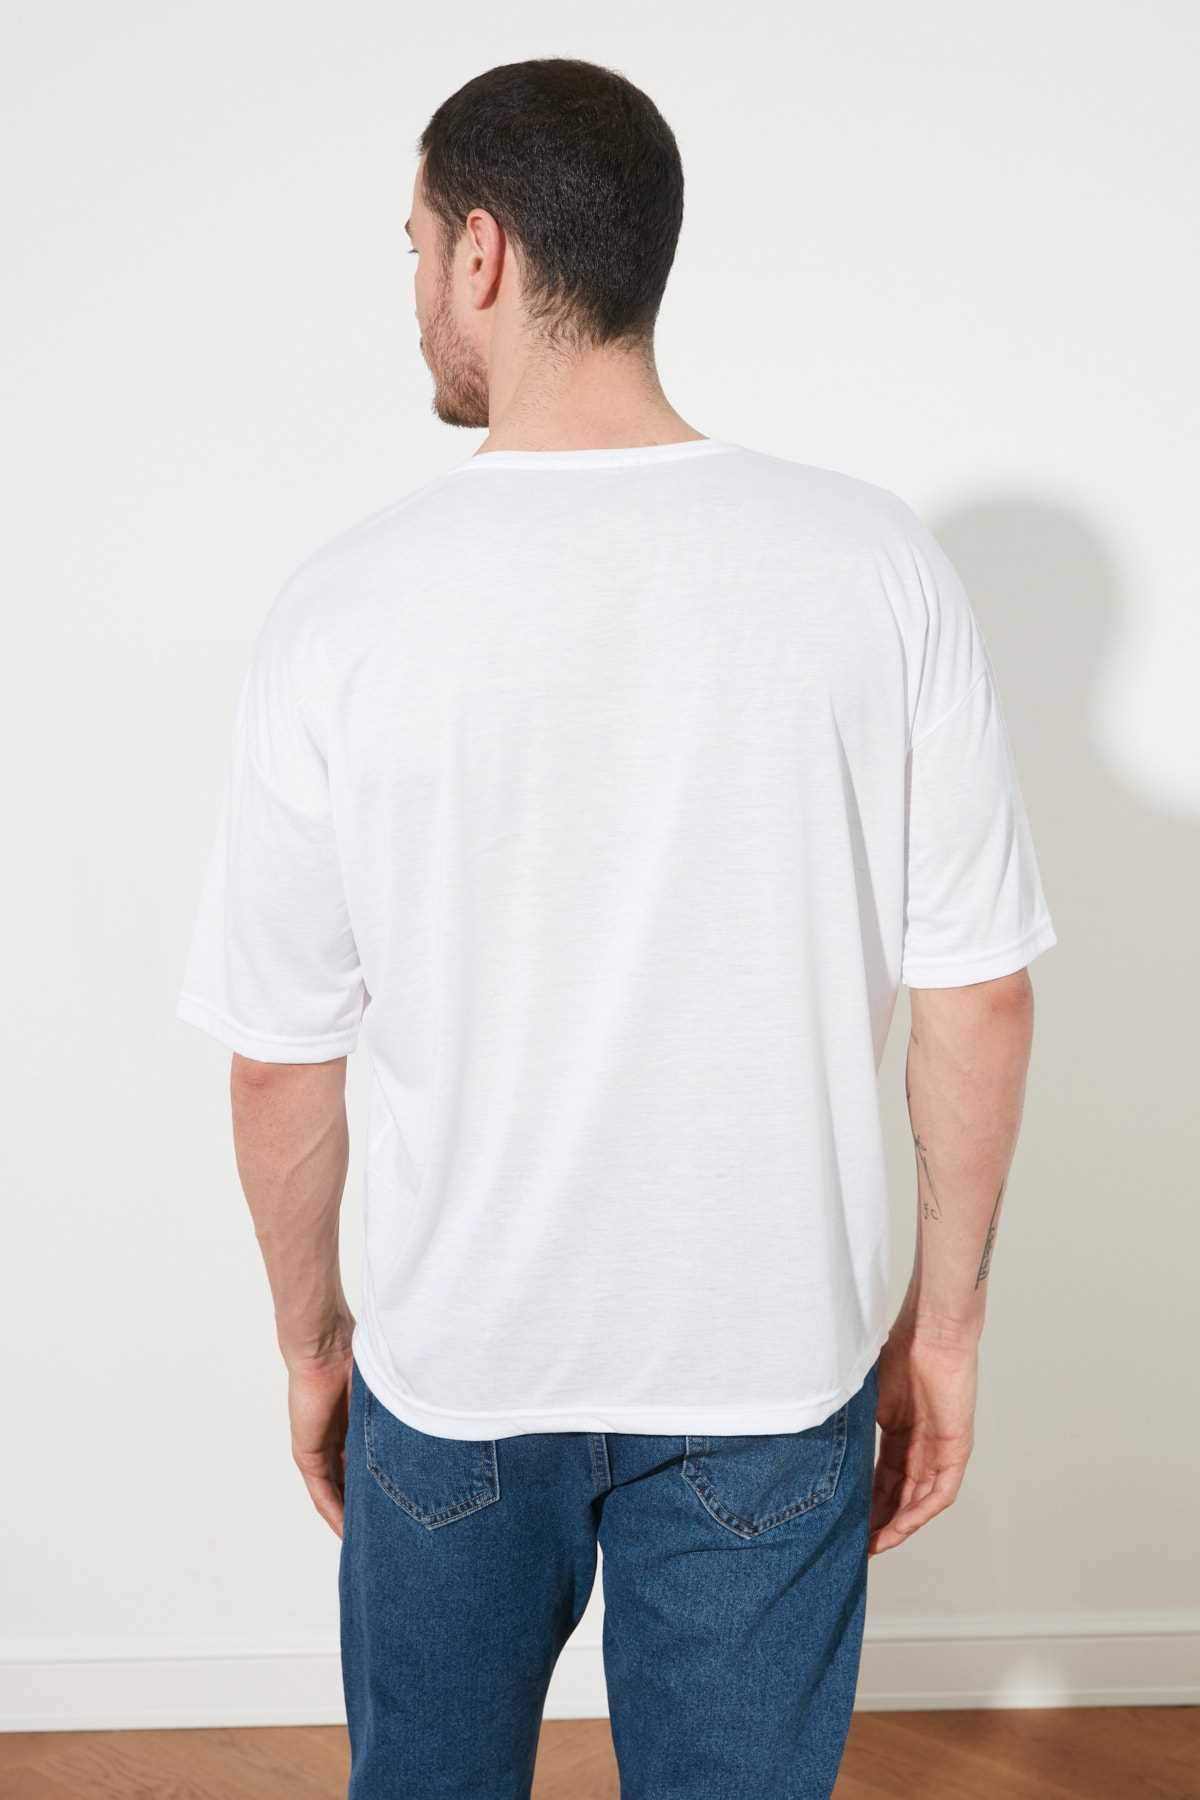 خرید انلاین تی شرت مردانه طرح دار مارک ترندیول مرد رنگ مشکی کد ty81365540